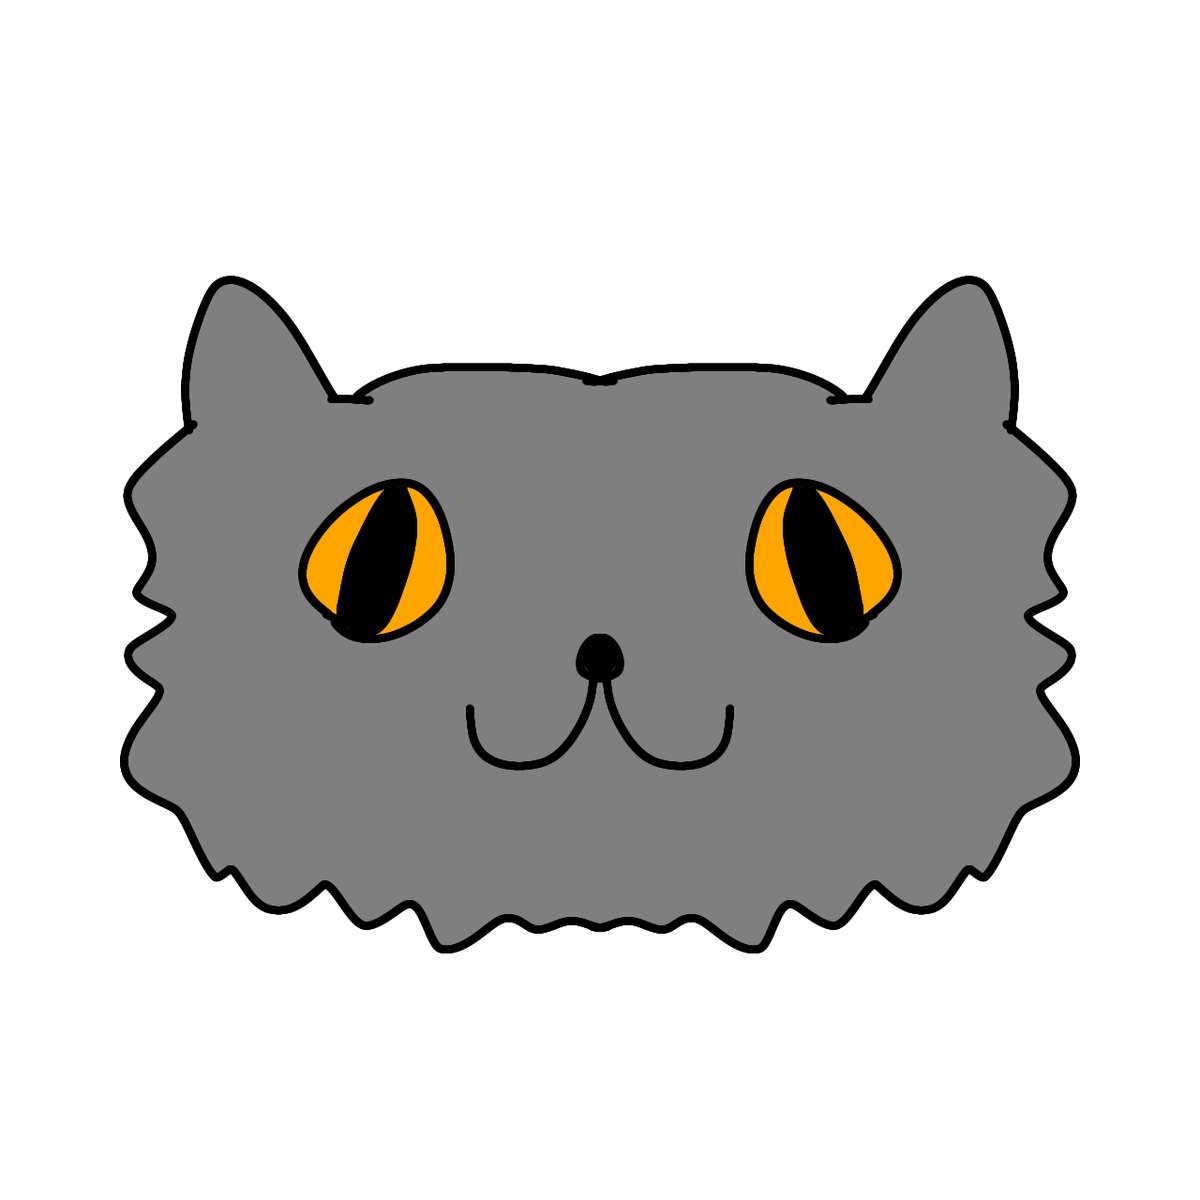 Gato cinza com olhos âmbar (Sirosmug) quebra-cabeças online